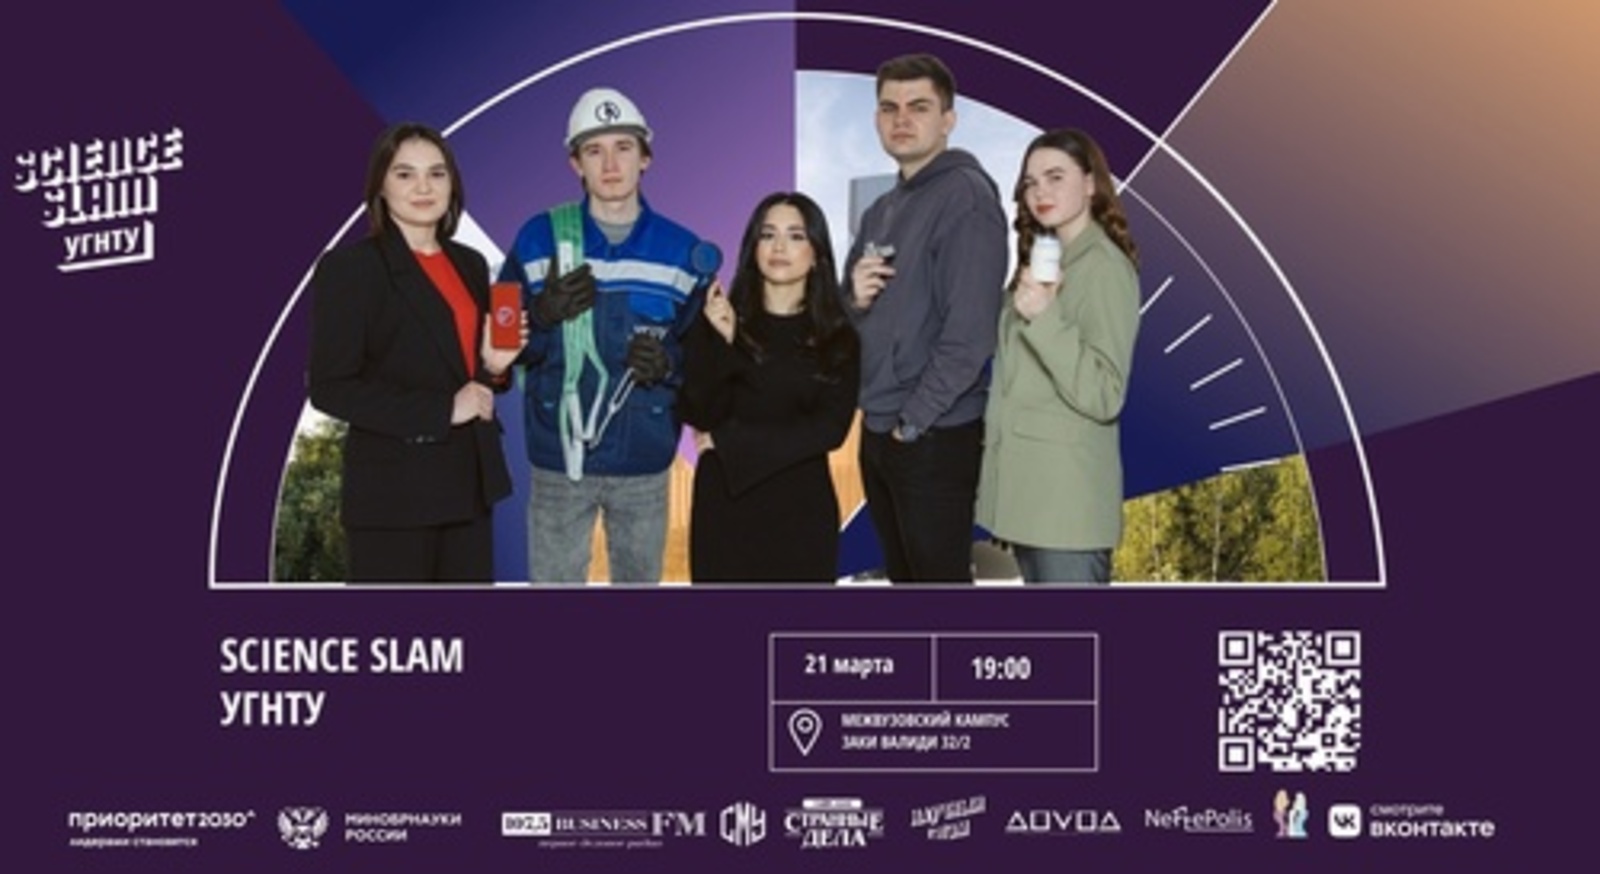 В межвузовском кампусе Евразийского НОЦ состоится научно-развлекательная битва Science Slam